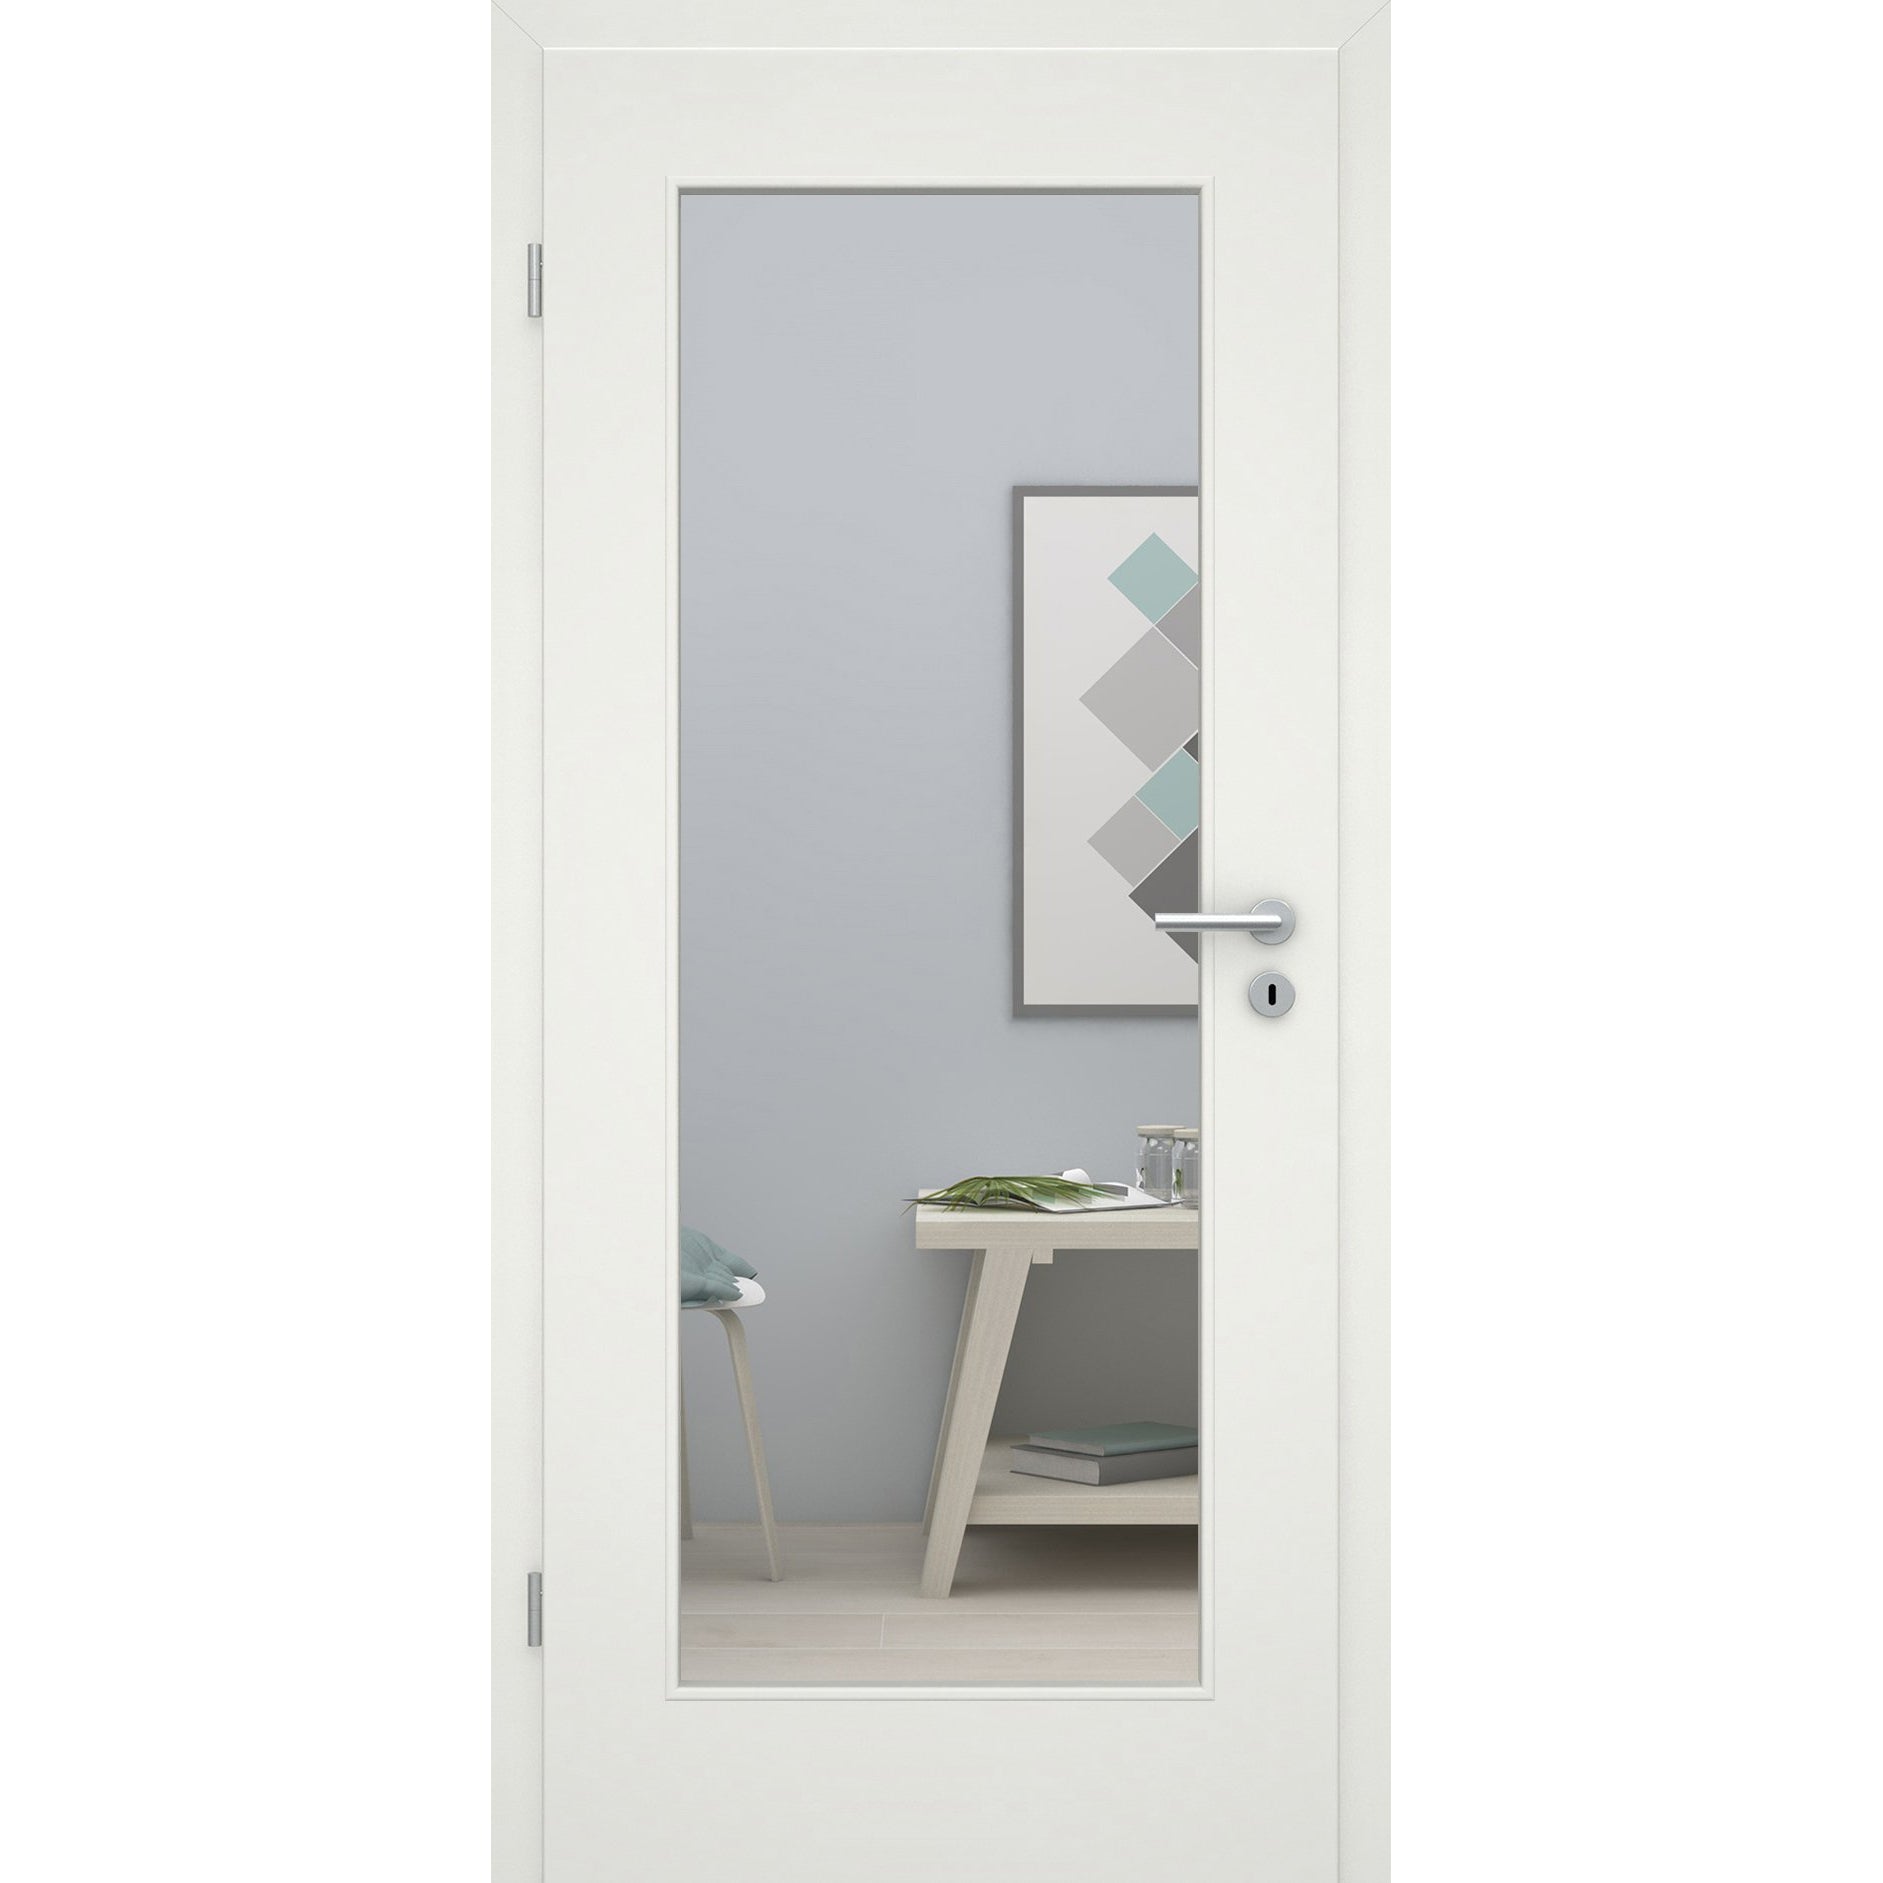 Zimmertür mit Lichtausschnitt soft-weiß 1 Kassette Eckkante - Modell Stiltür M11LA